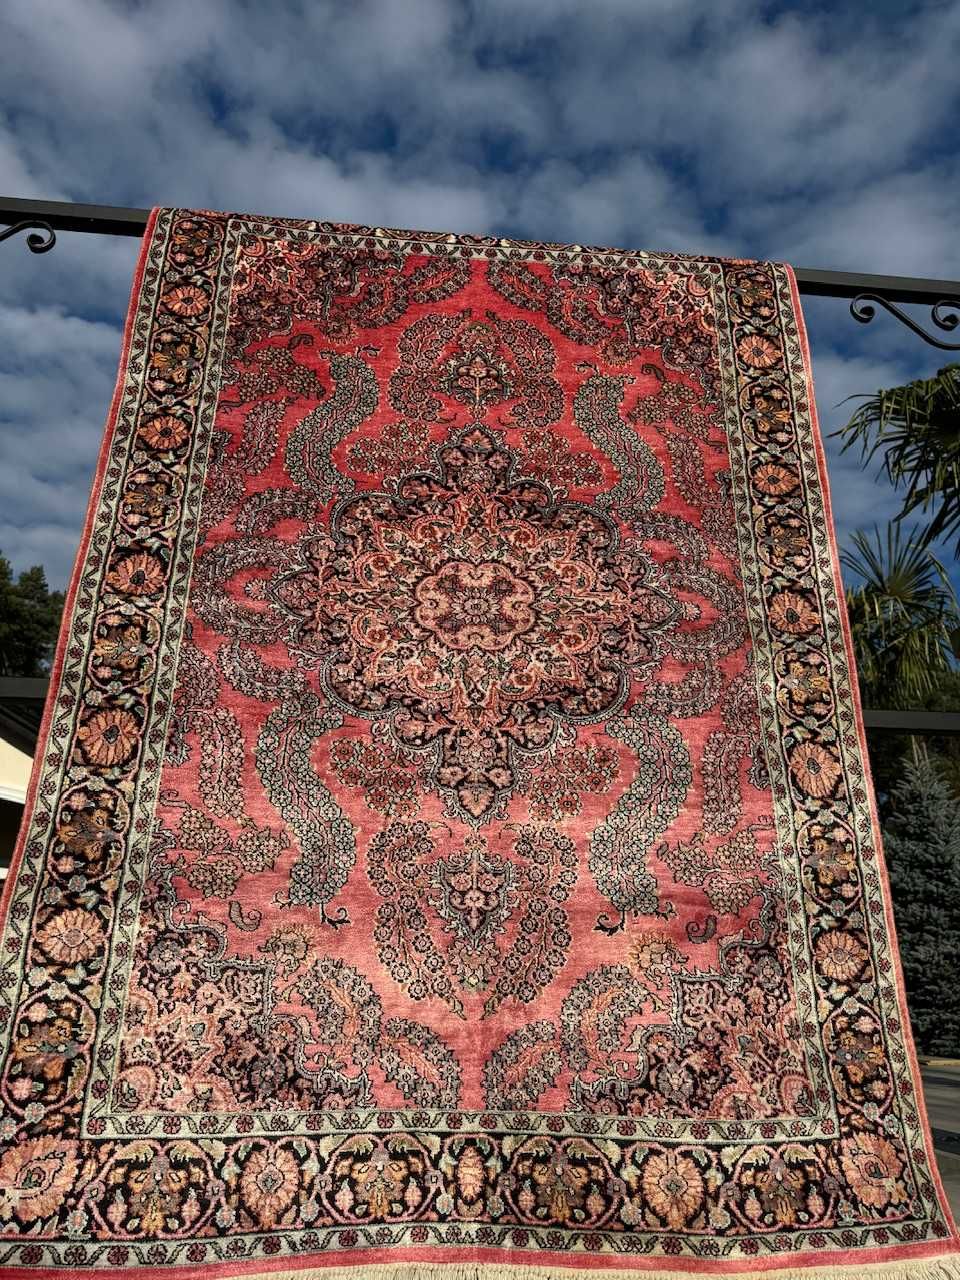 Nowy r.tkany jedwabny dywan perski  GHOUM 190x121 cm galeria 14 tyś